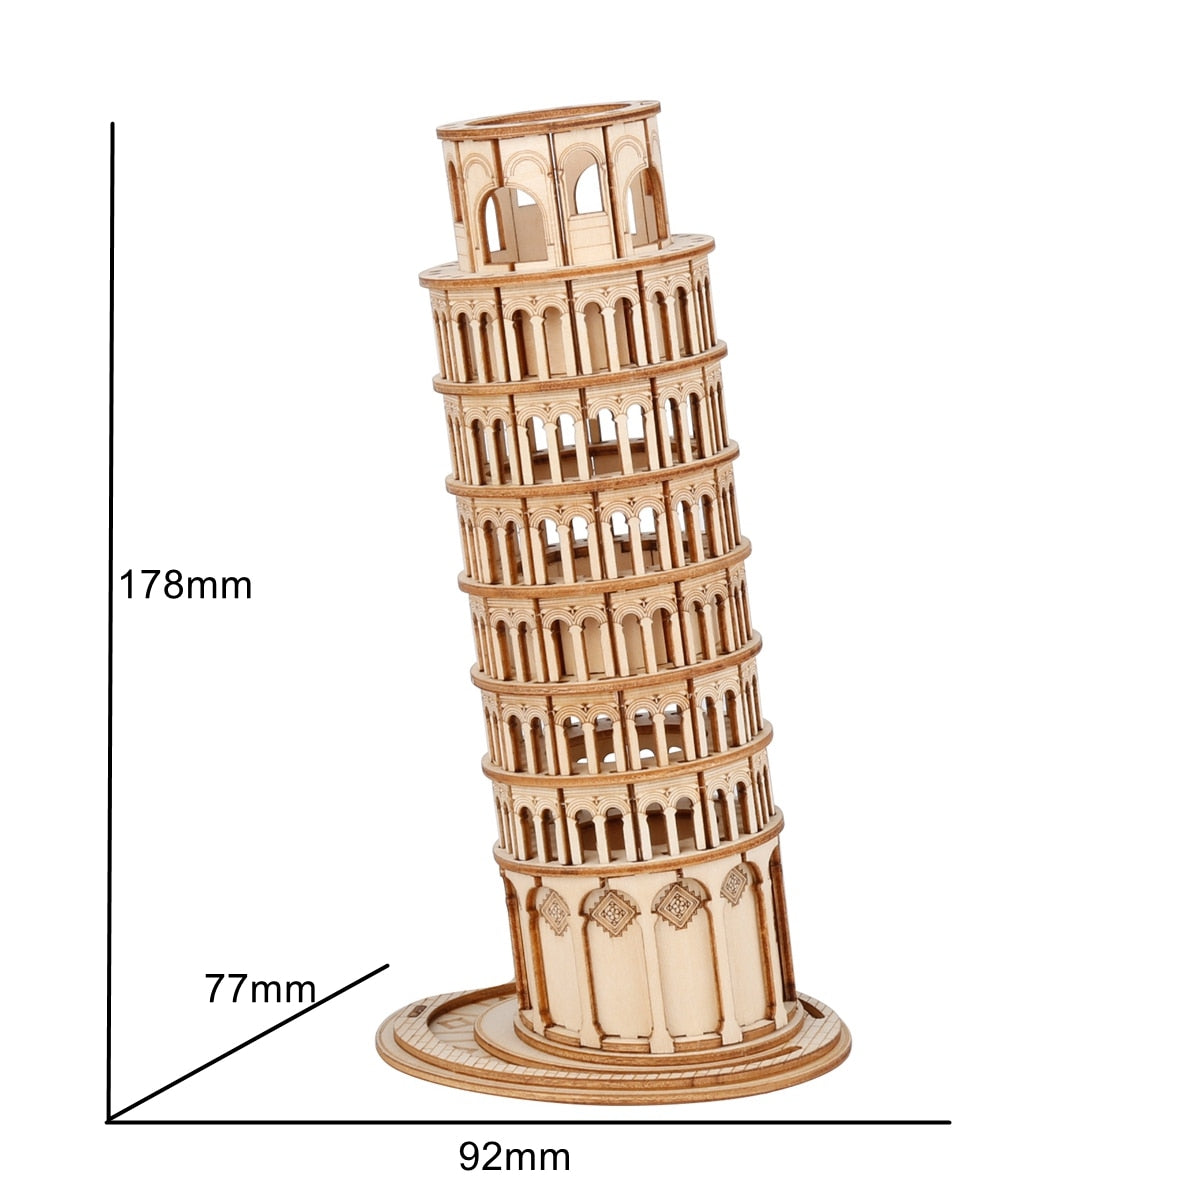 3D puzzel - Big Ben, Pisa, Eifeltoren én meer | Cadeautip voor de feestdagen